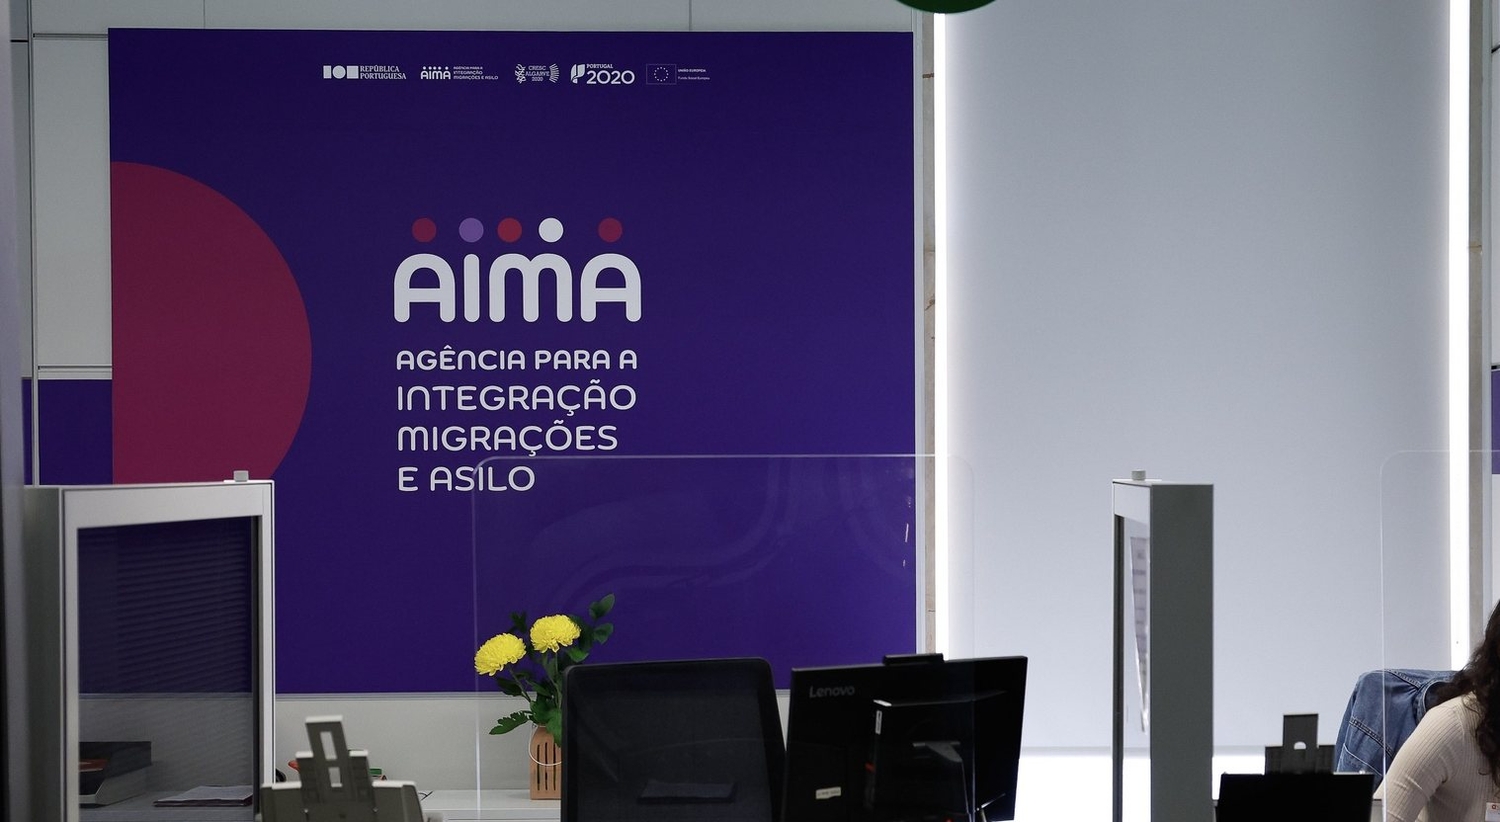 AIMA notifica migrantes de pagamentos de taxas cinco vezes superiores ao esperado